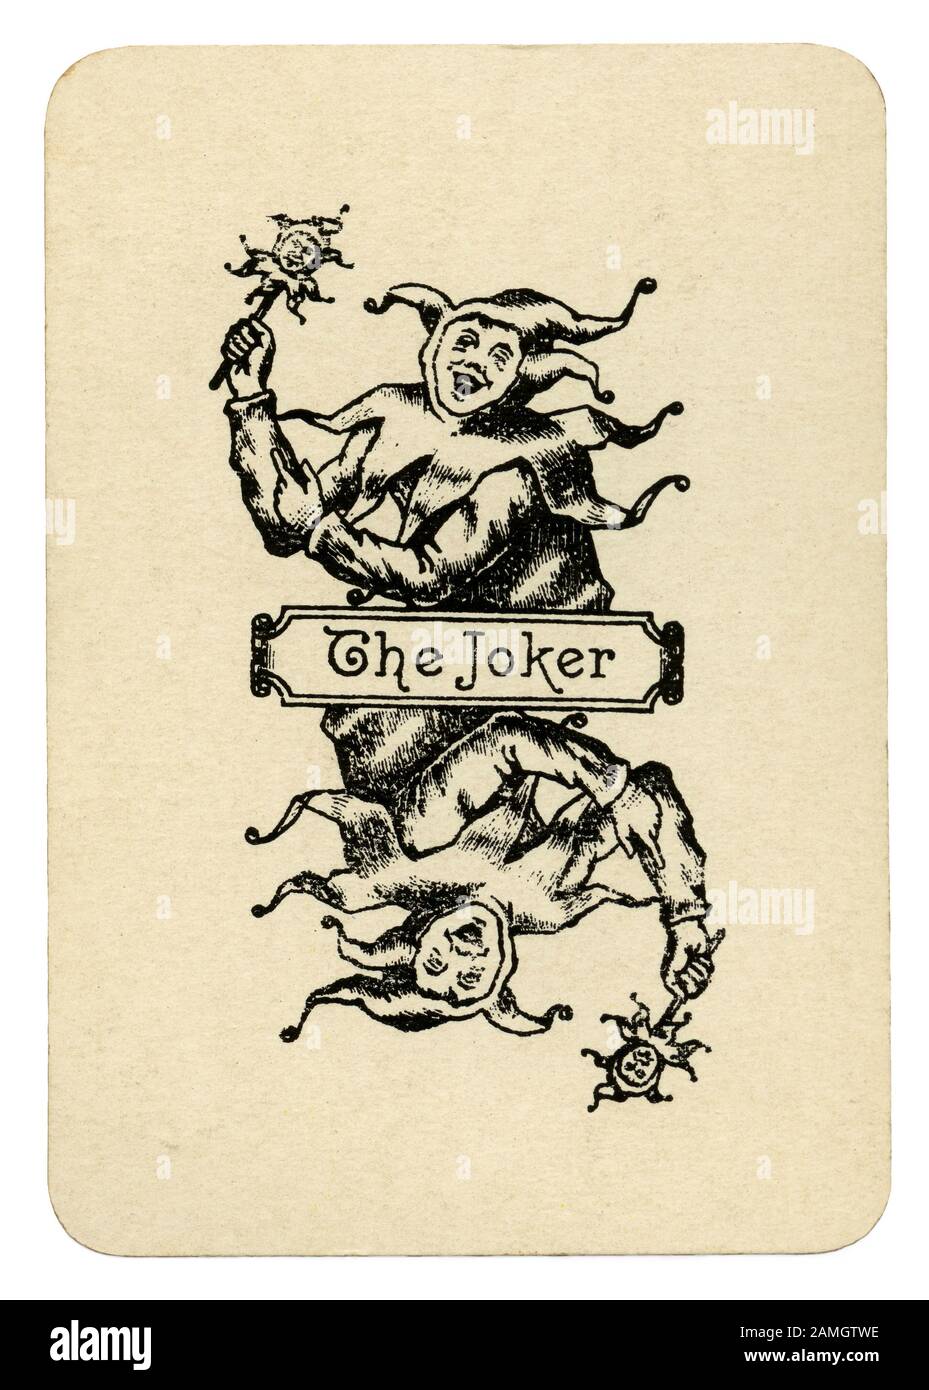 Una vecchia carta da gioco con una illustrazione di 'Joker' - da un pacchetto promozionale di carte da gioco da un L Clarke e Co di Stirling Old Lowland Scotch whisky c.1910. La società è stata basata in Glasgow e Londra. Il Joker è raffigurato come un buffone di corte o lo sciocco ed è in possesso di un 'marotte' - un puntello bastone o scettro con una testa scolpita su di esso. Dal francese, significa un Fool's "pallina" (o battito) - spesso con piccole campane. Portato da un buffone o Arlecchino, testa in miniatura spesso riflette (come qui di seguito) il costume del buffone che lo trasporta. Foto Stock